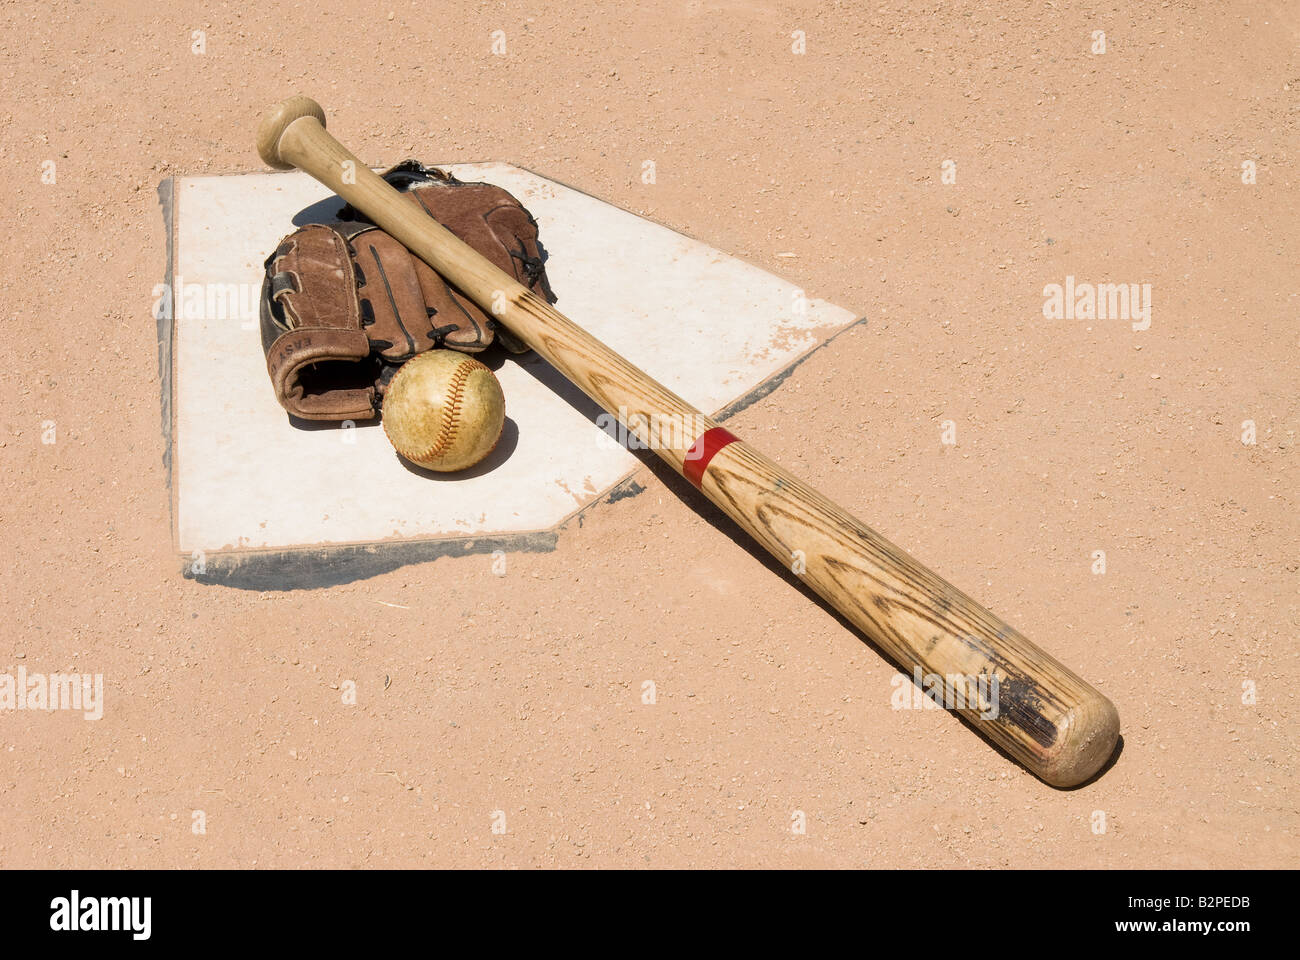 Attrezzatura da baseball seduti sulla piastra iniziale impostato come una immagine concettuale Foto Stock